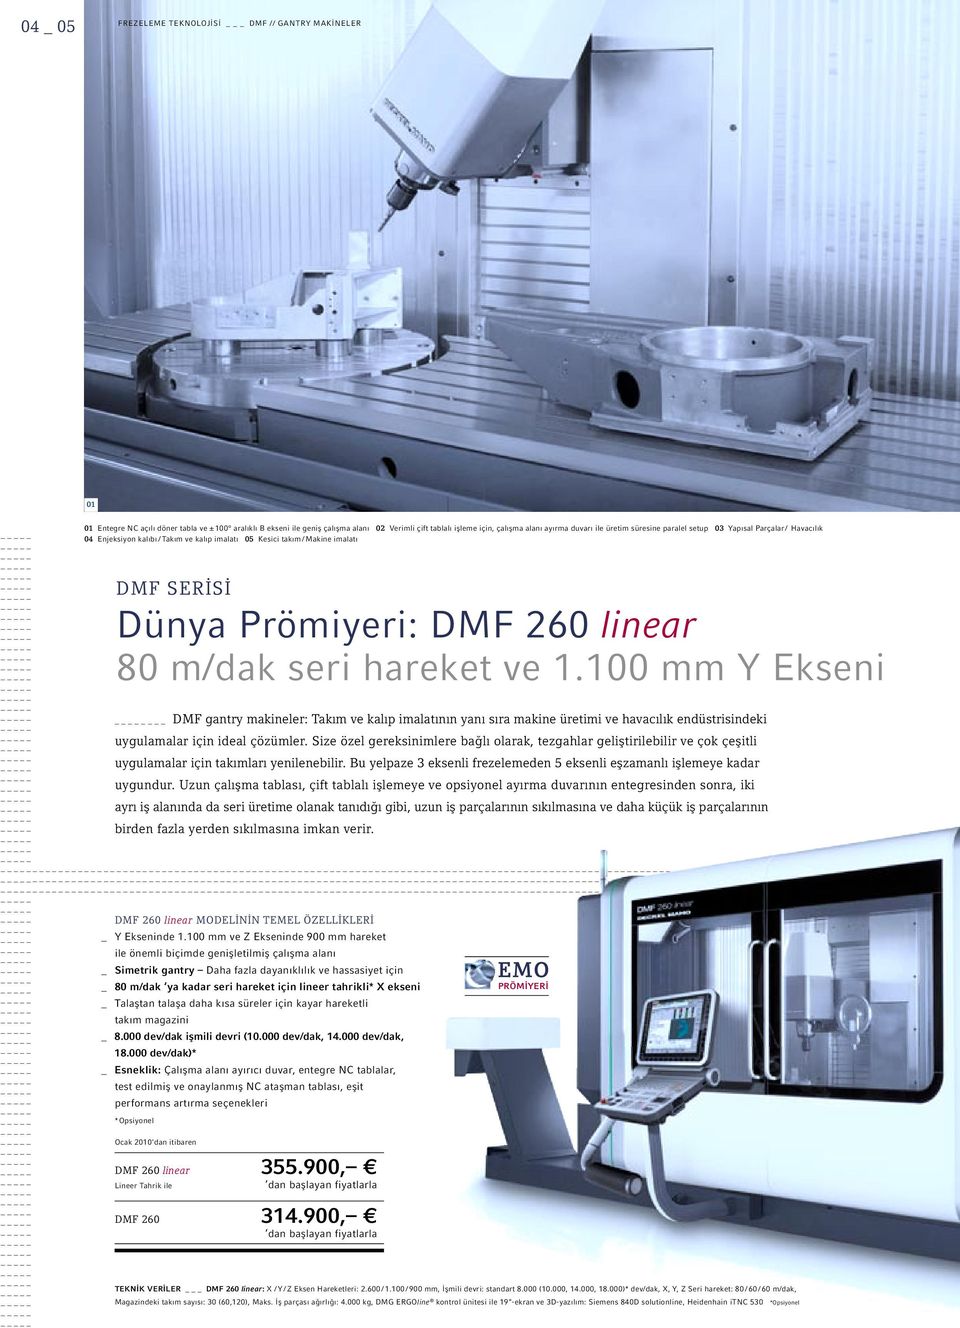 m/dak seri hareket ve 1.100 mm Y Ekseni DMF gantry makineler: Takım ve kalıp imalatının yanı sıra makine üretimi ve havacılık endüstrisindeki uygulamalar için ideal çözümler.